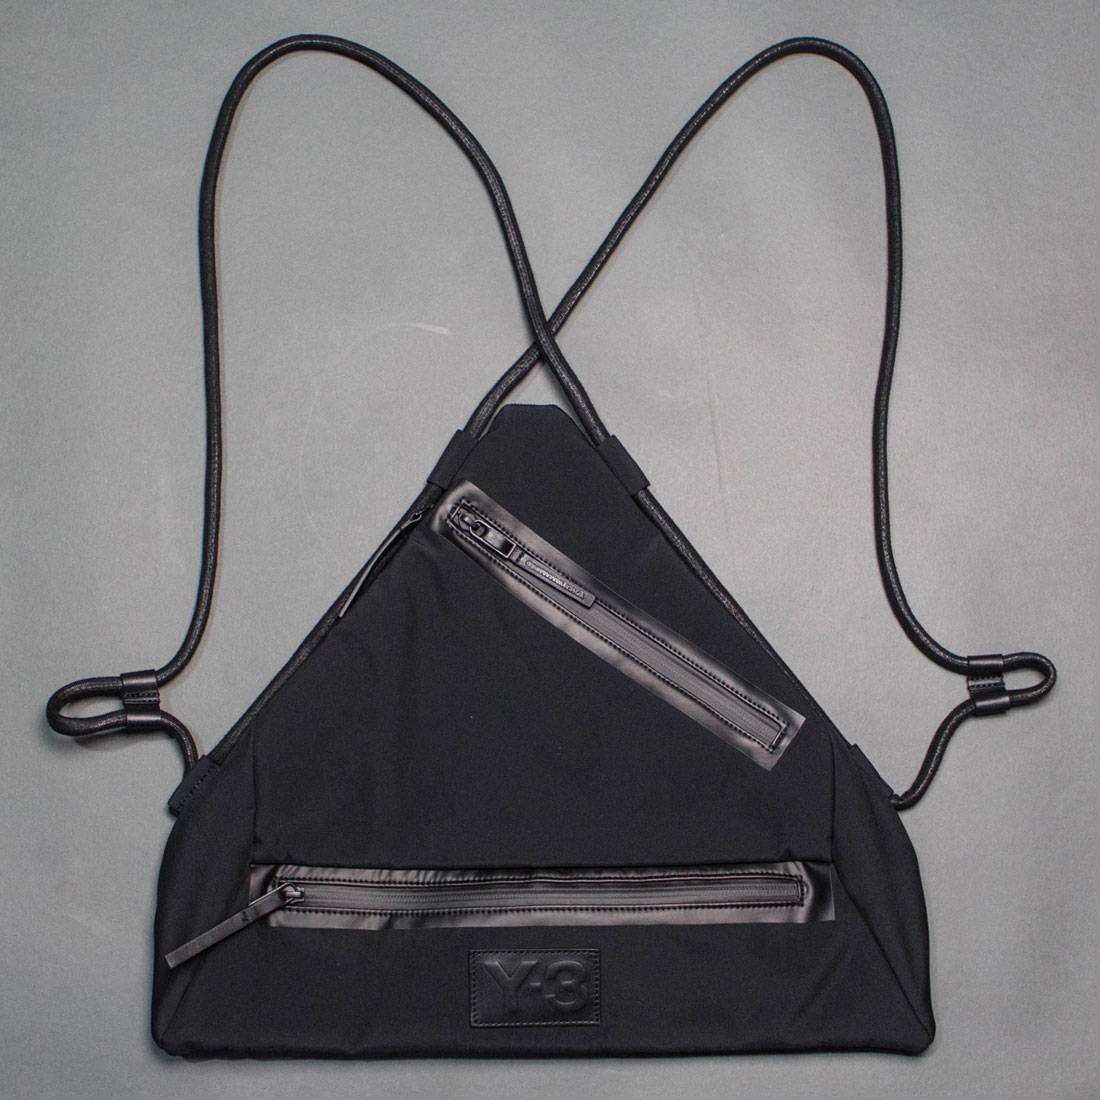 Adidas Y-3 Qasa Triangle Bag (black)